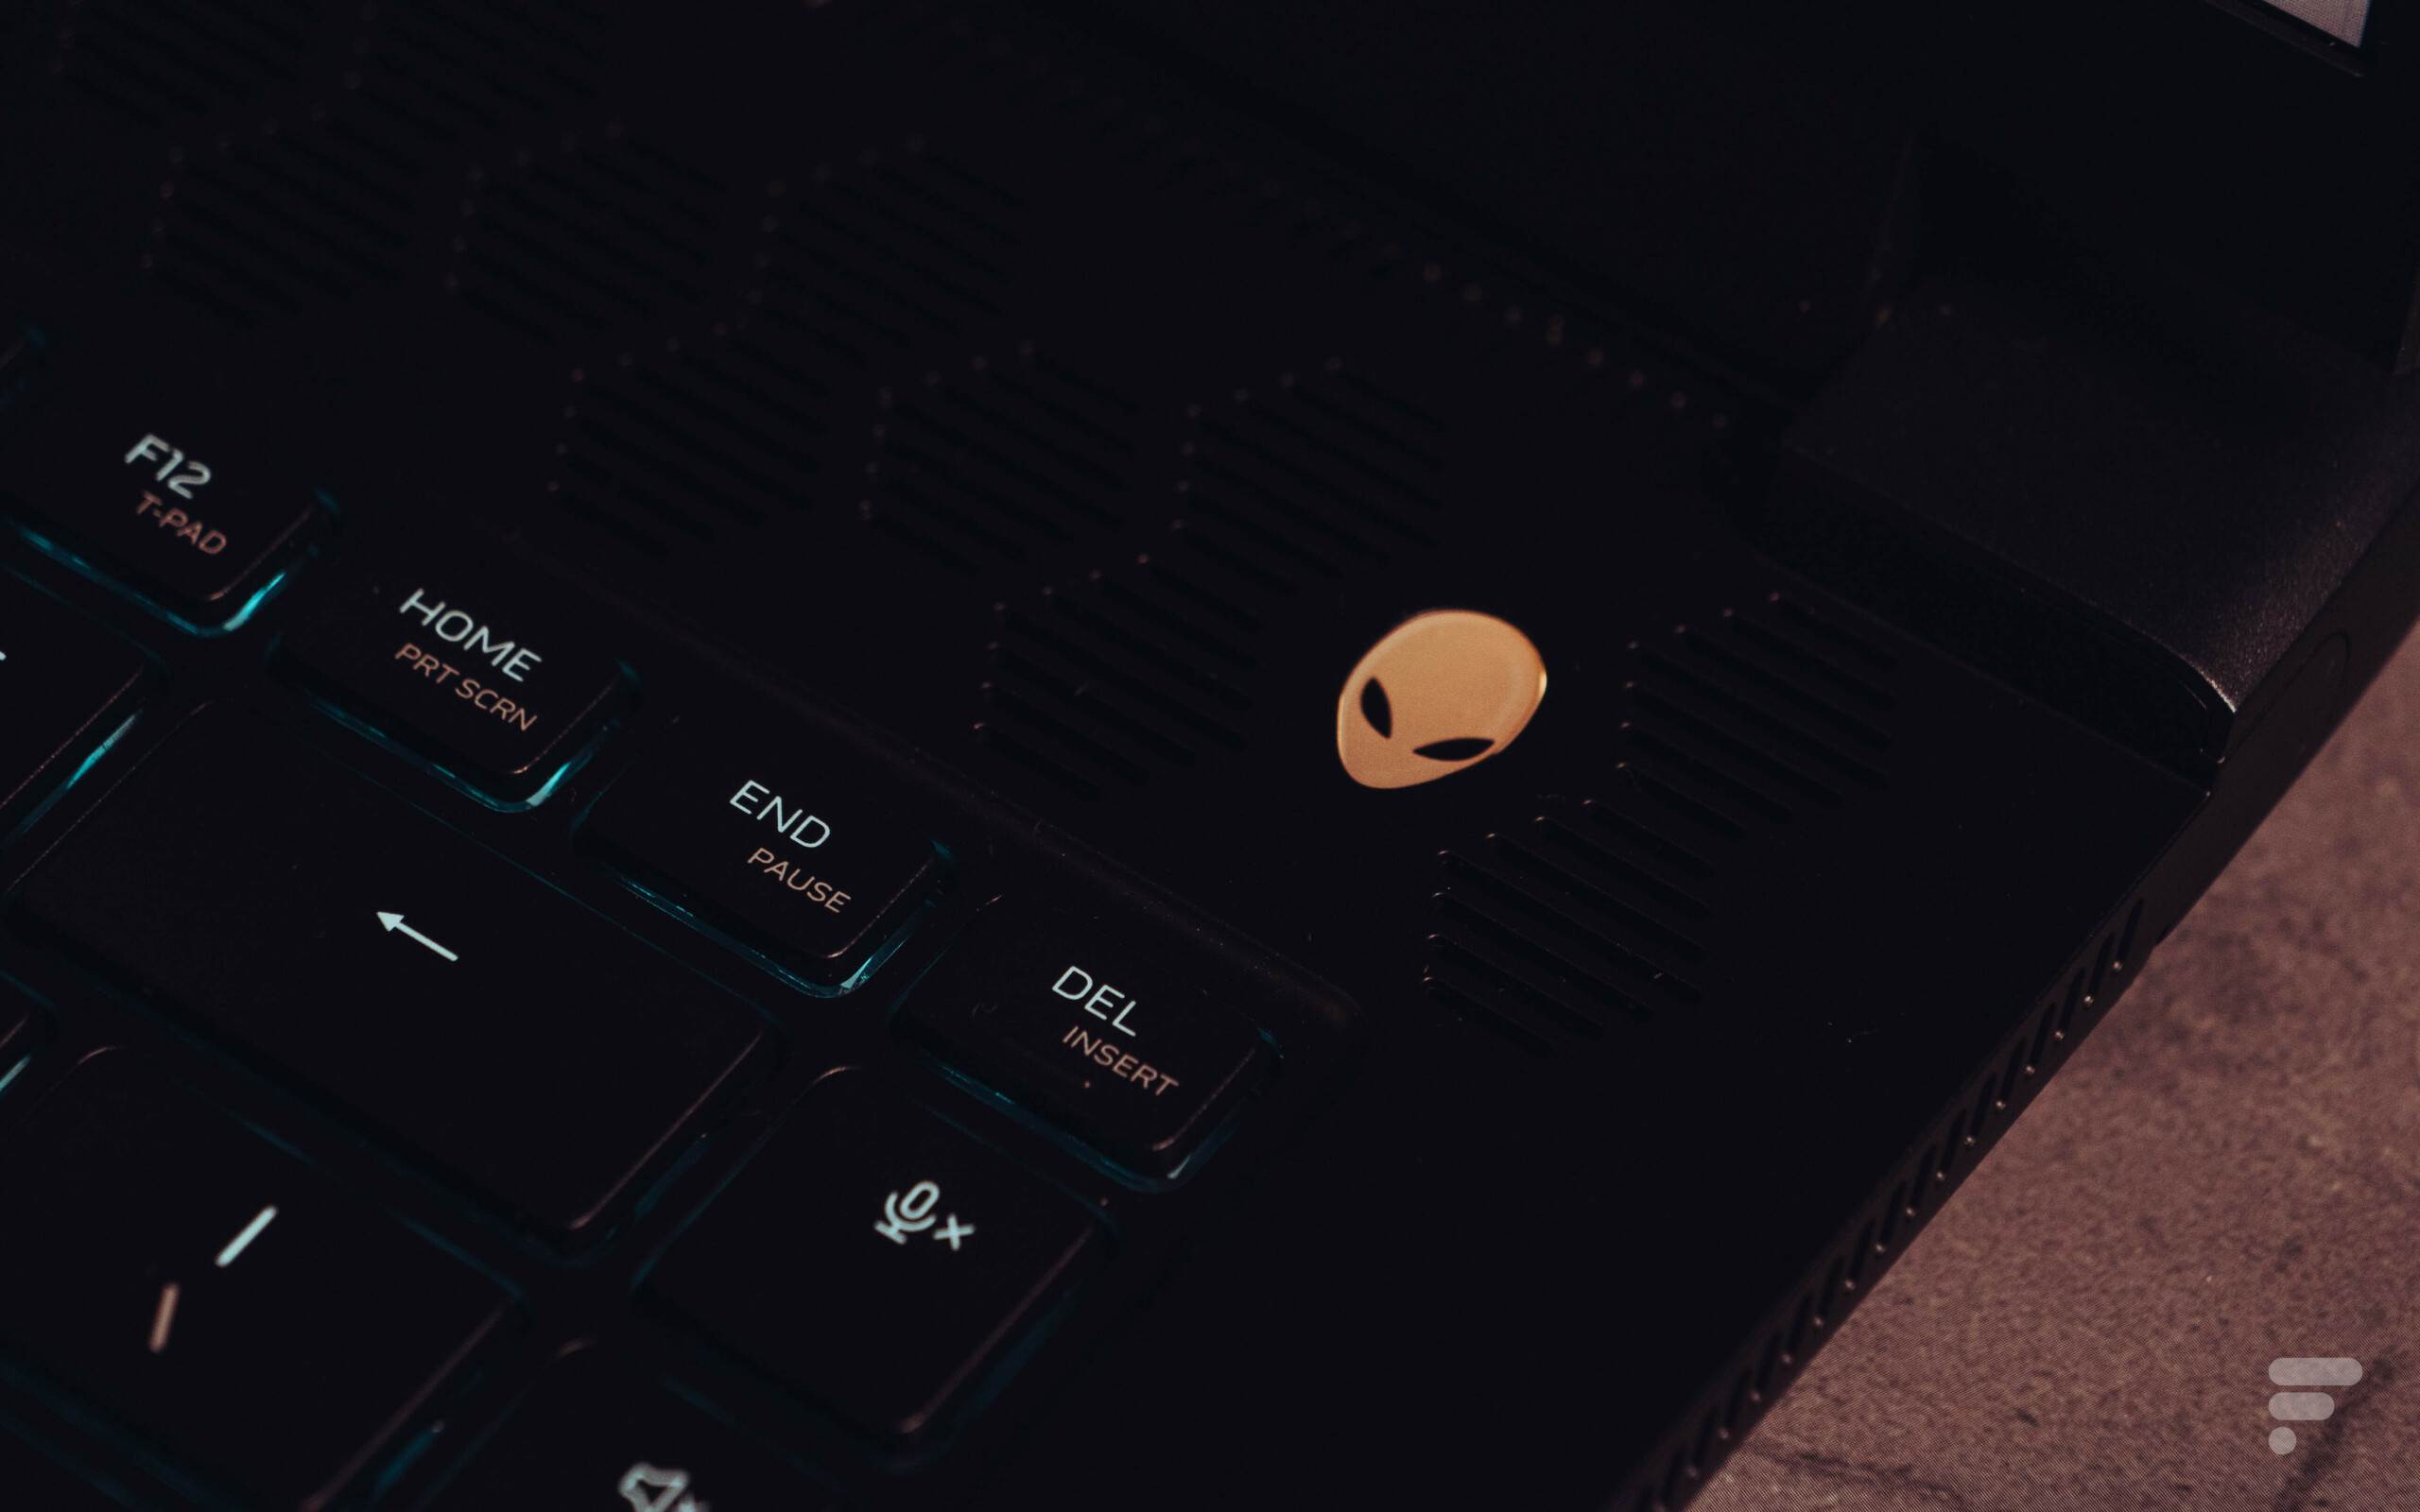 Le bouton d'alimentation reprend le logo d'Alienware // Source : Frandroid - Anthony Wonner